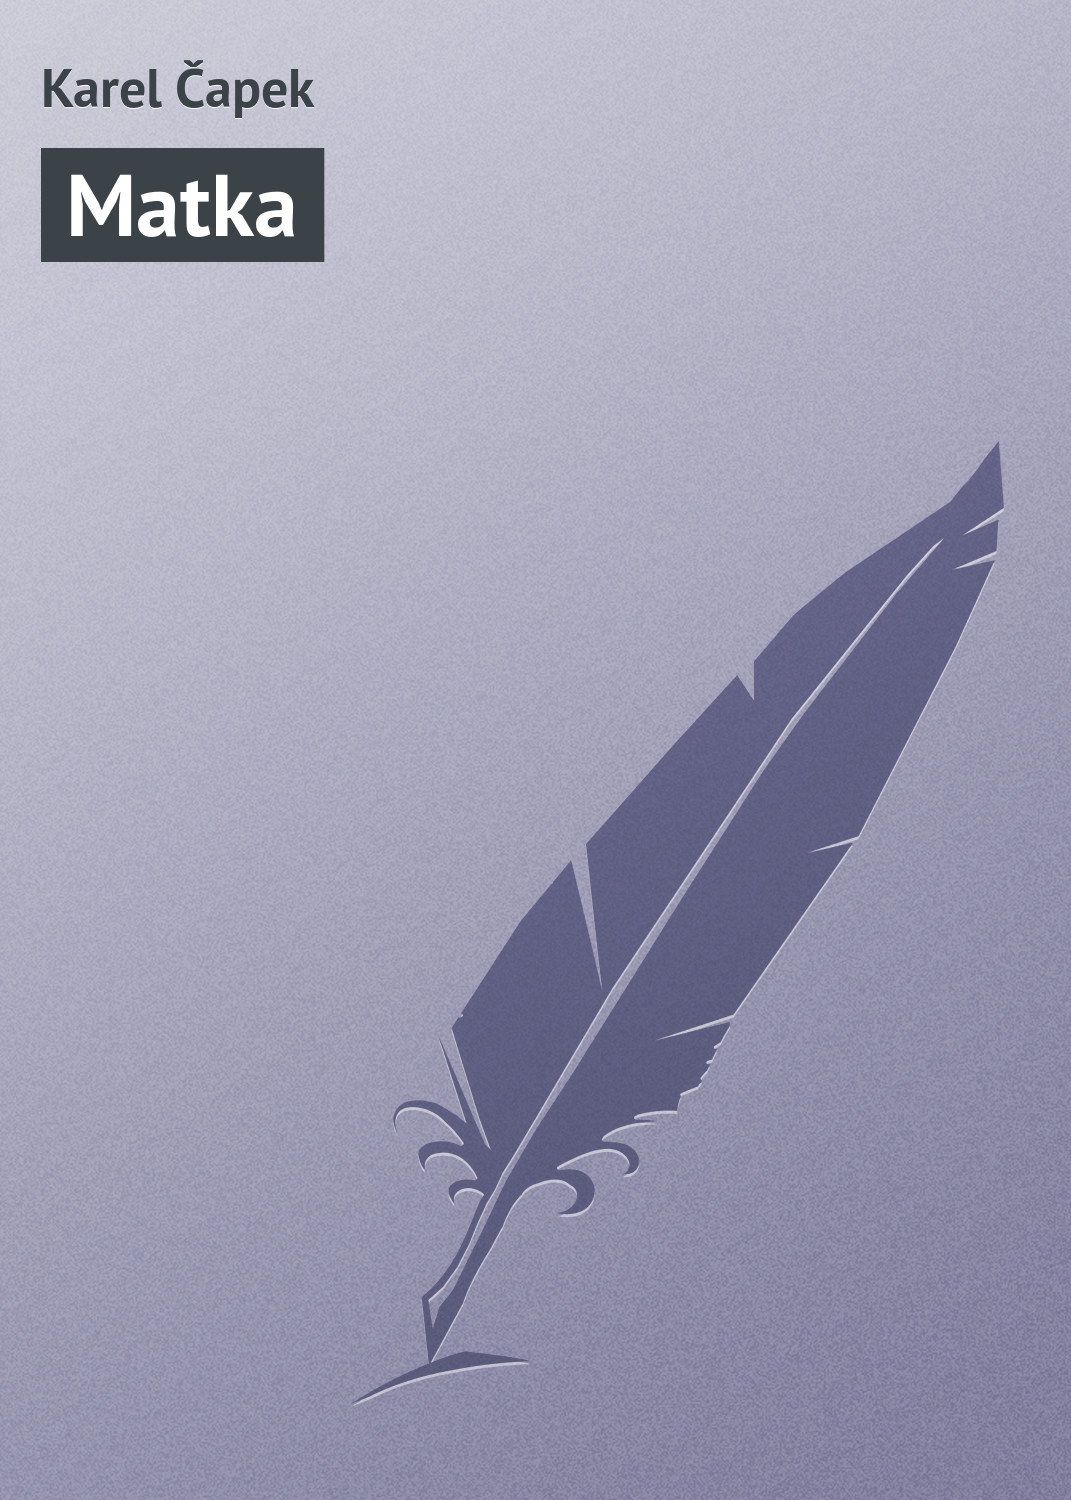 Книга Matka из серии , созданная Karel Čapek, может относится к жанру Зарубежная старинная литература, Зарубежная классика. Стоимость электронной книги Matka с идентификатором 20833838 составляет 5.99 руб.